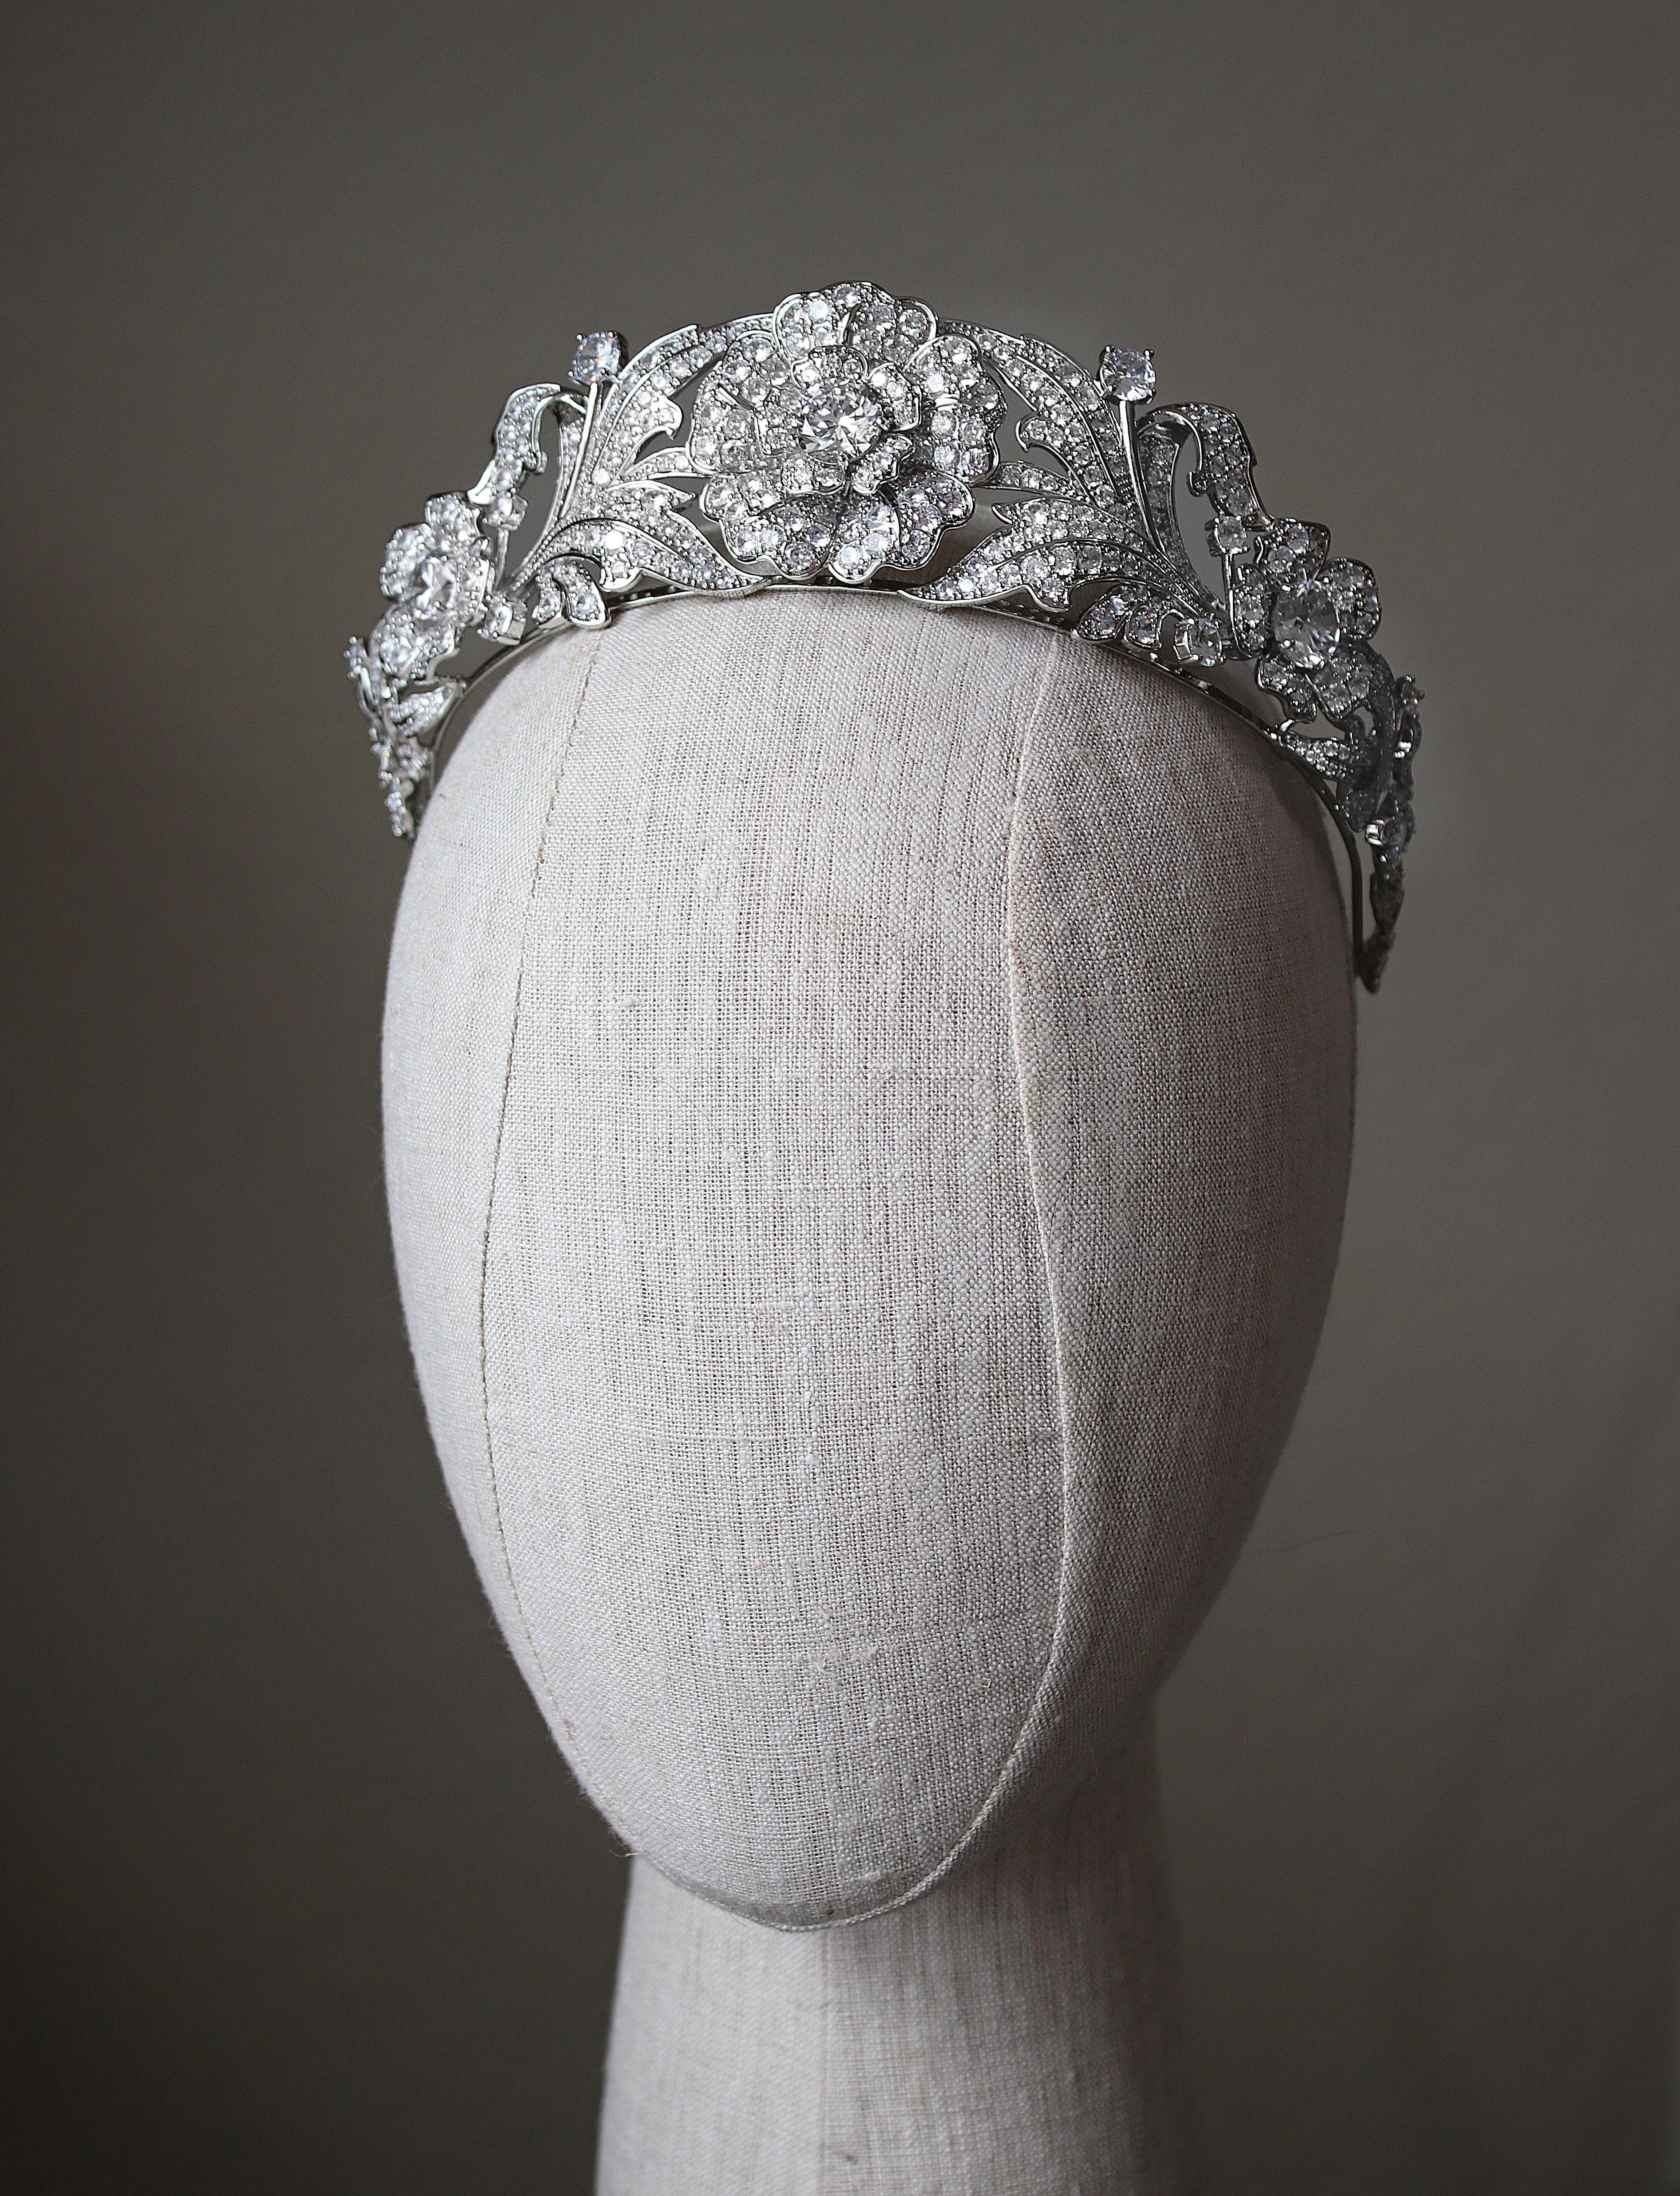 Chaumet Tiara  Headpiece jewelry, Princess jewelry, Royal jewelry